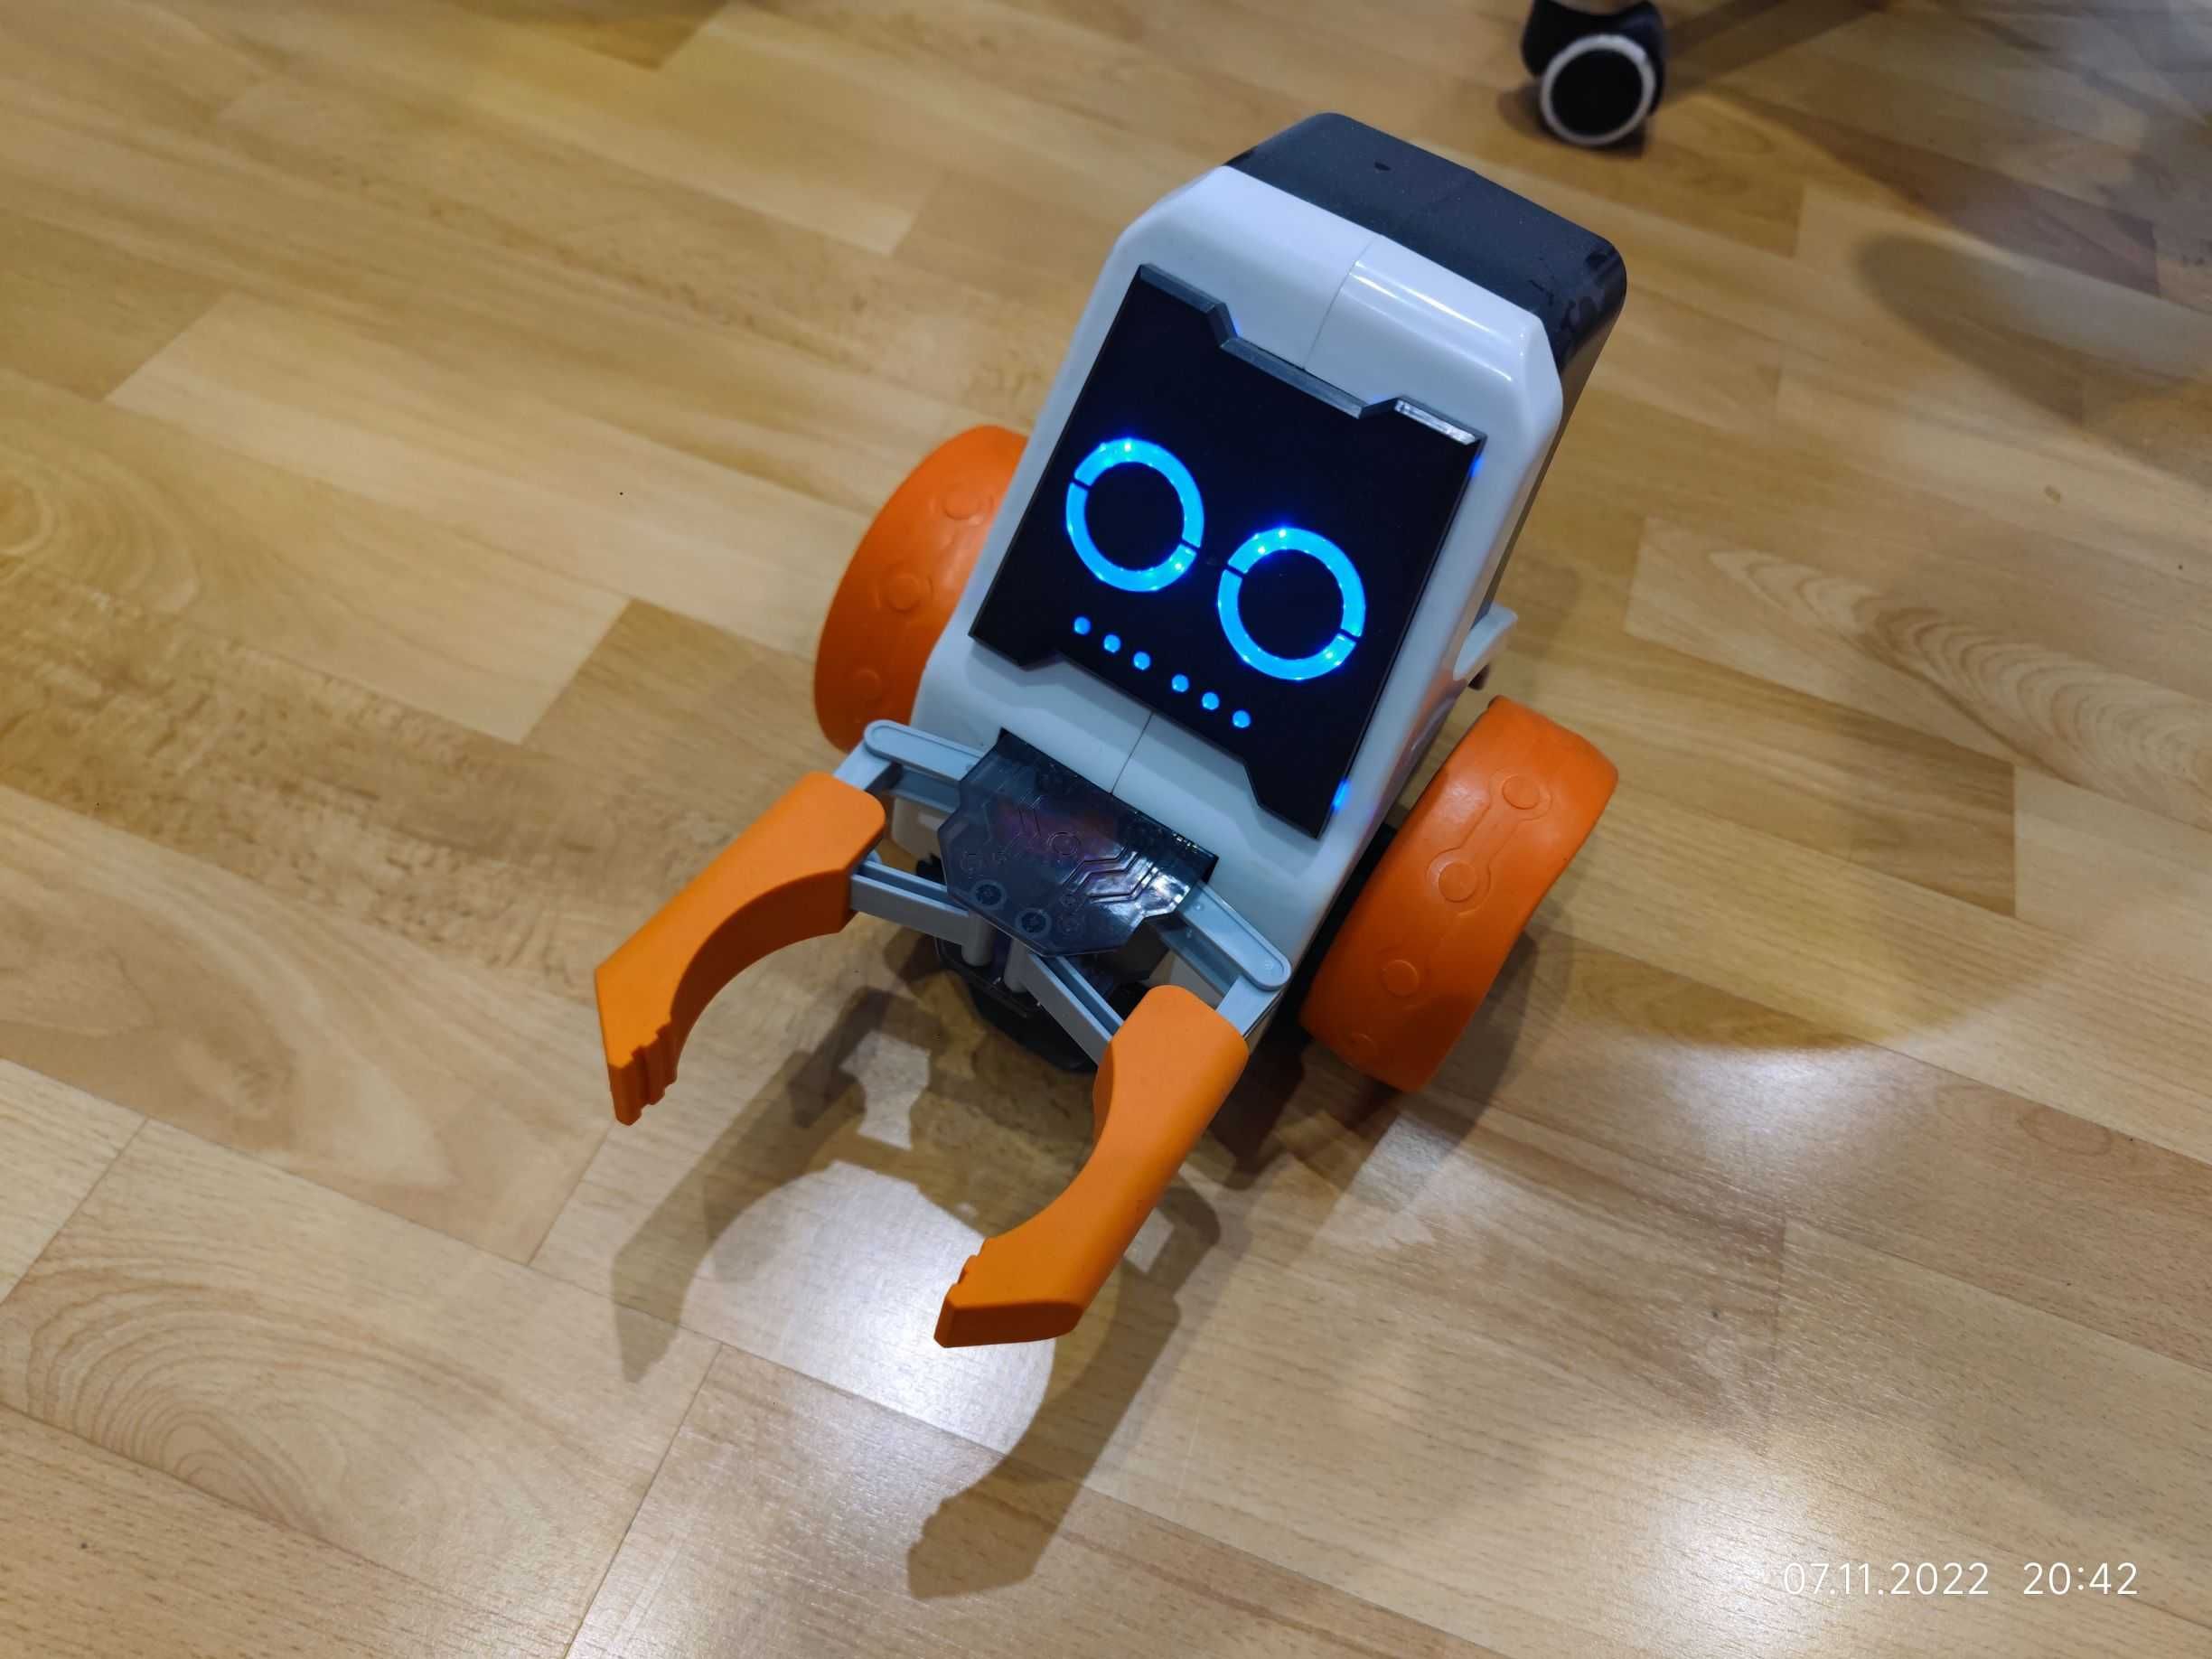 Robonex, Innobot zdalnie sterowany robot smartfon programowany